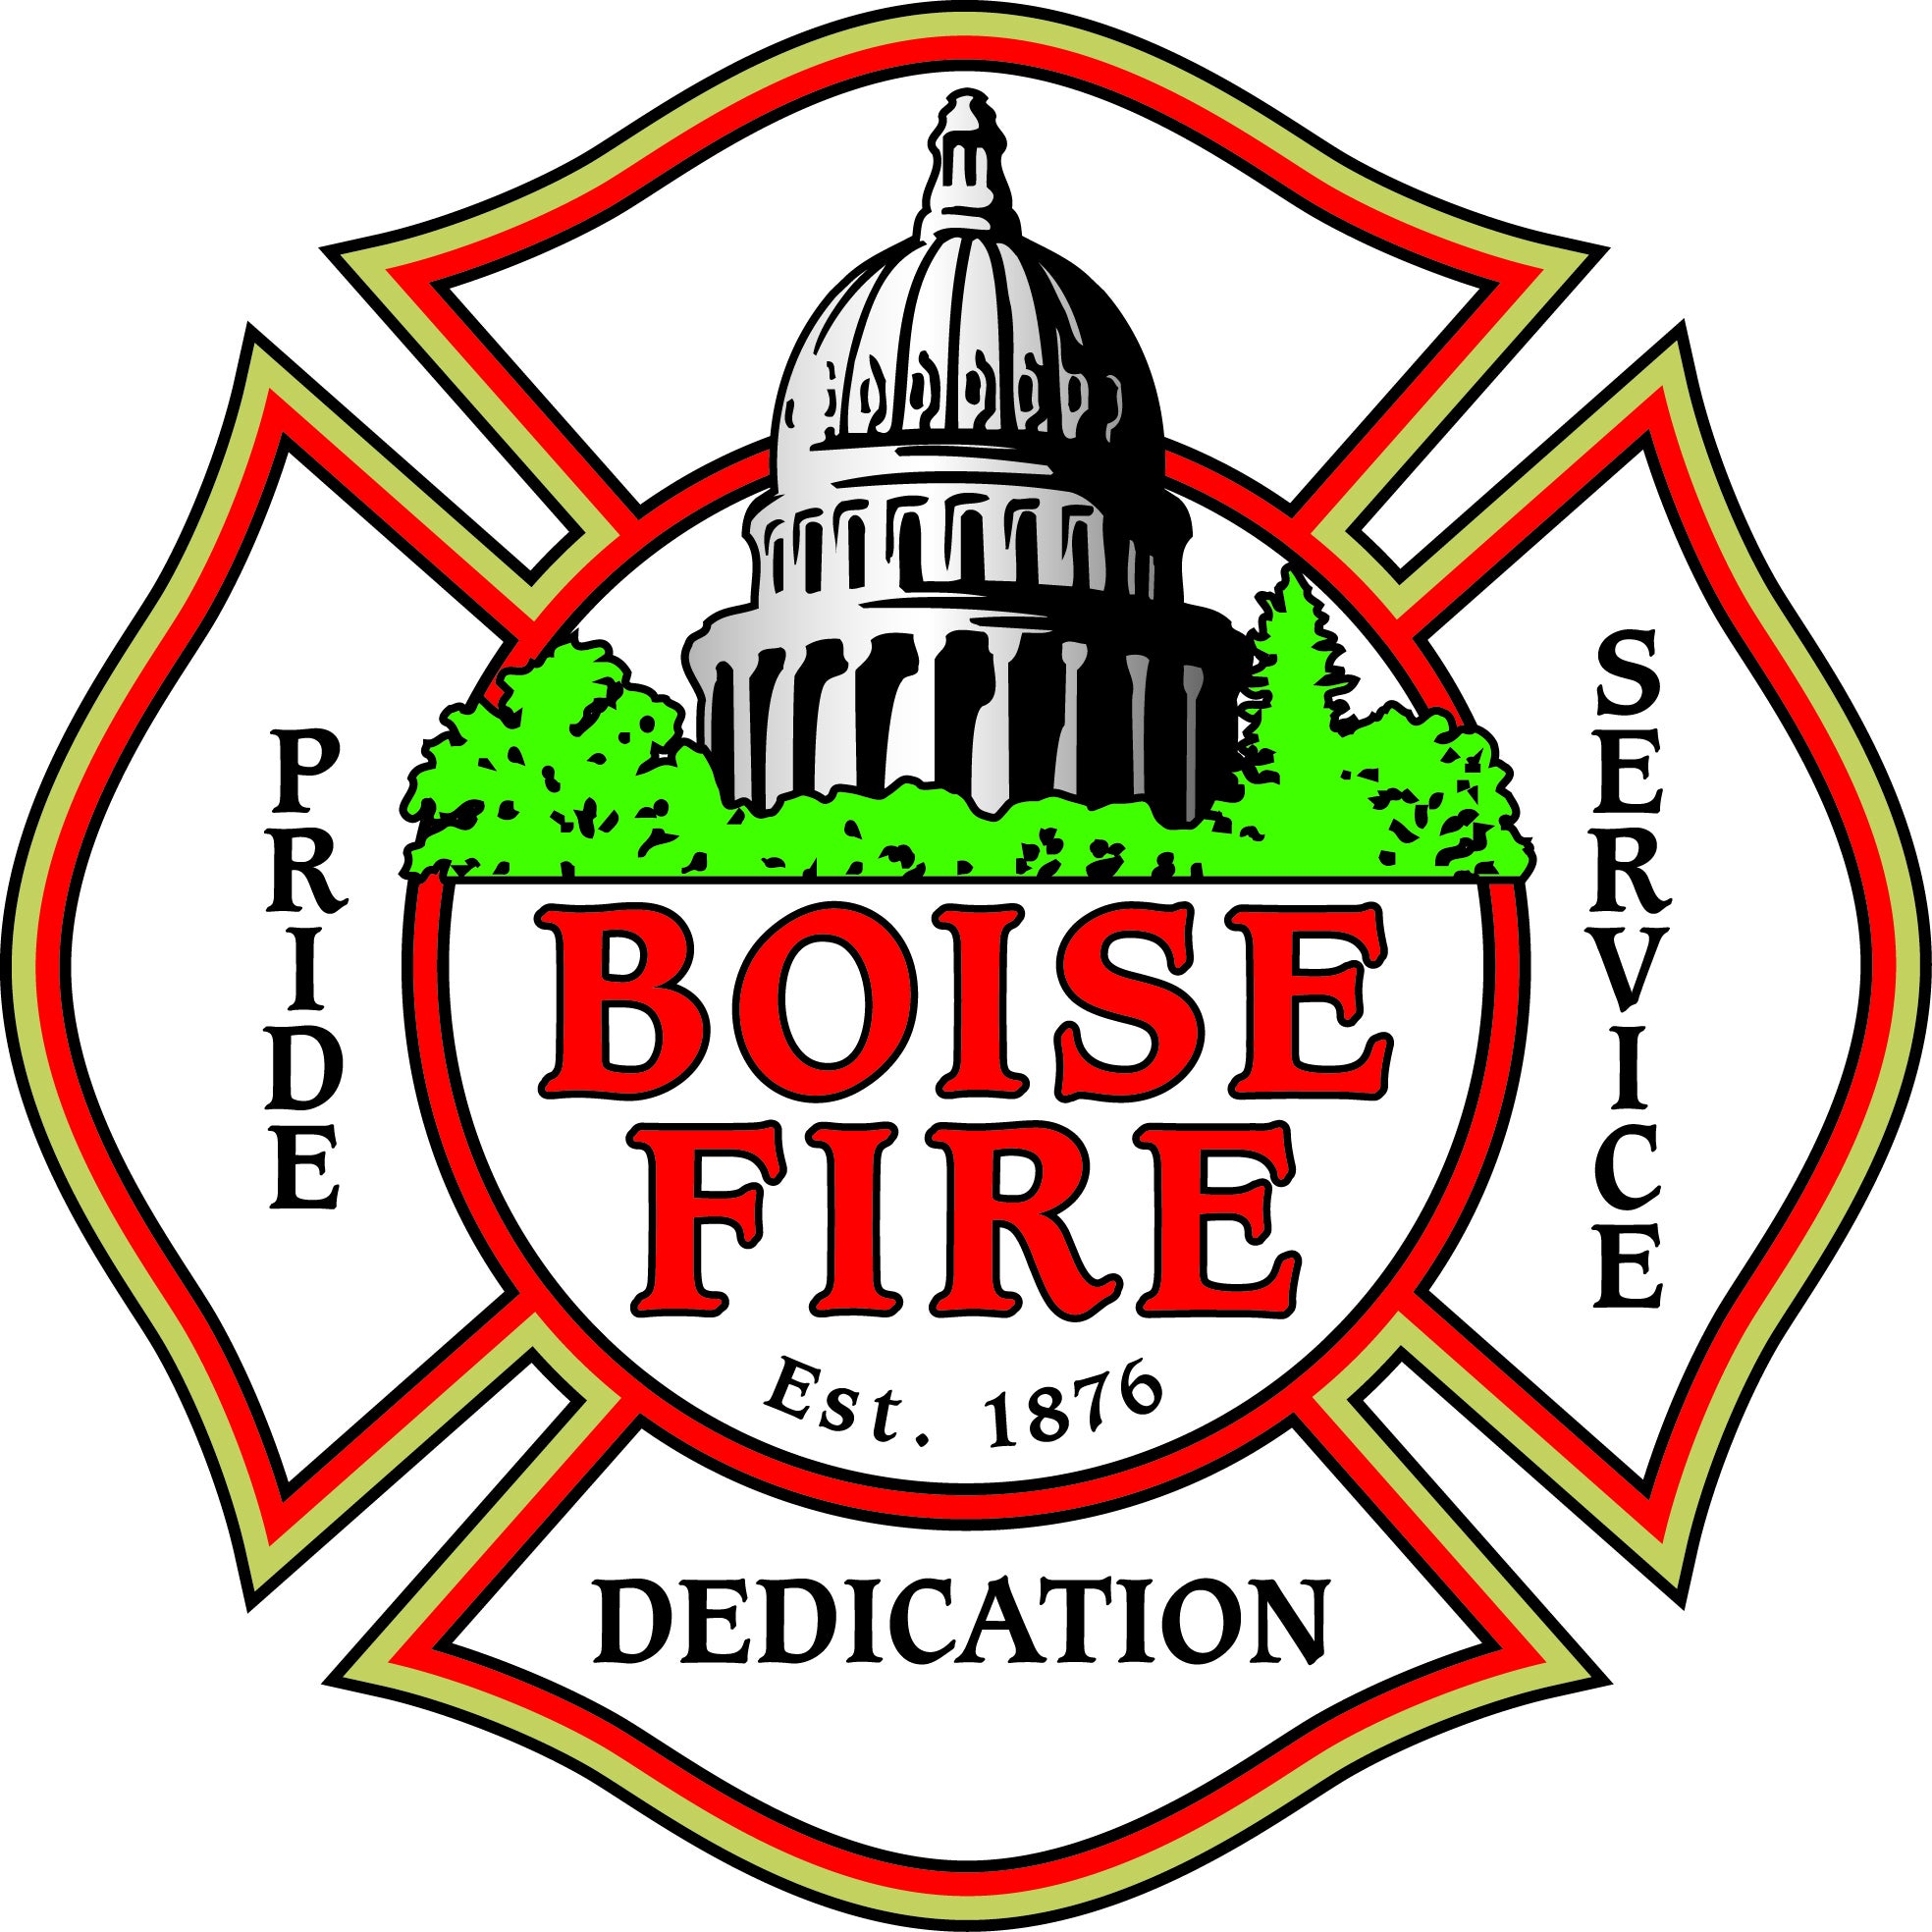 Boise Fire Est. 1876 - Pride, Service, Dedication